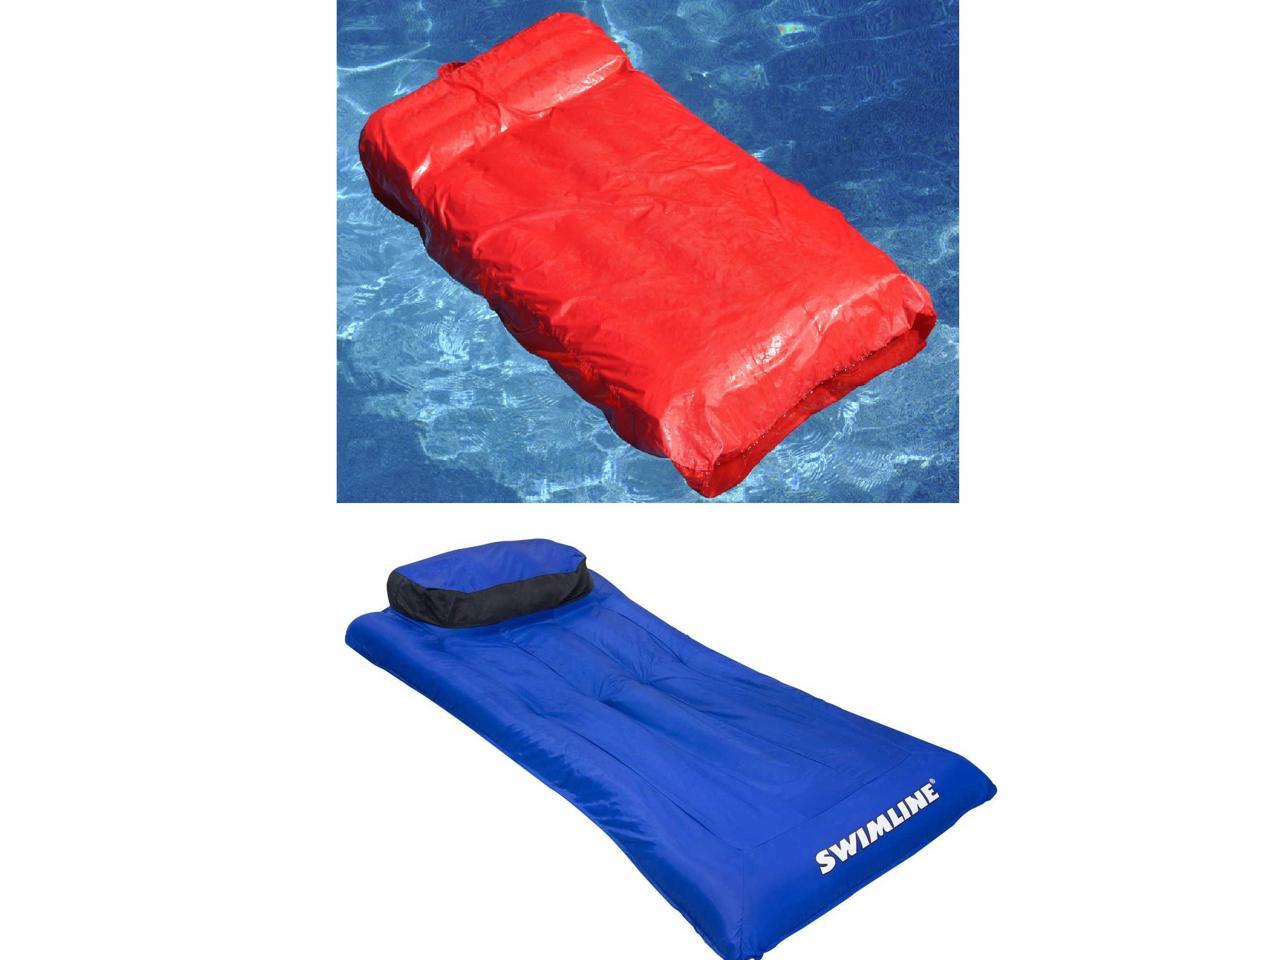 fabric covered air mattress